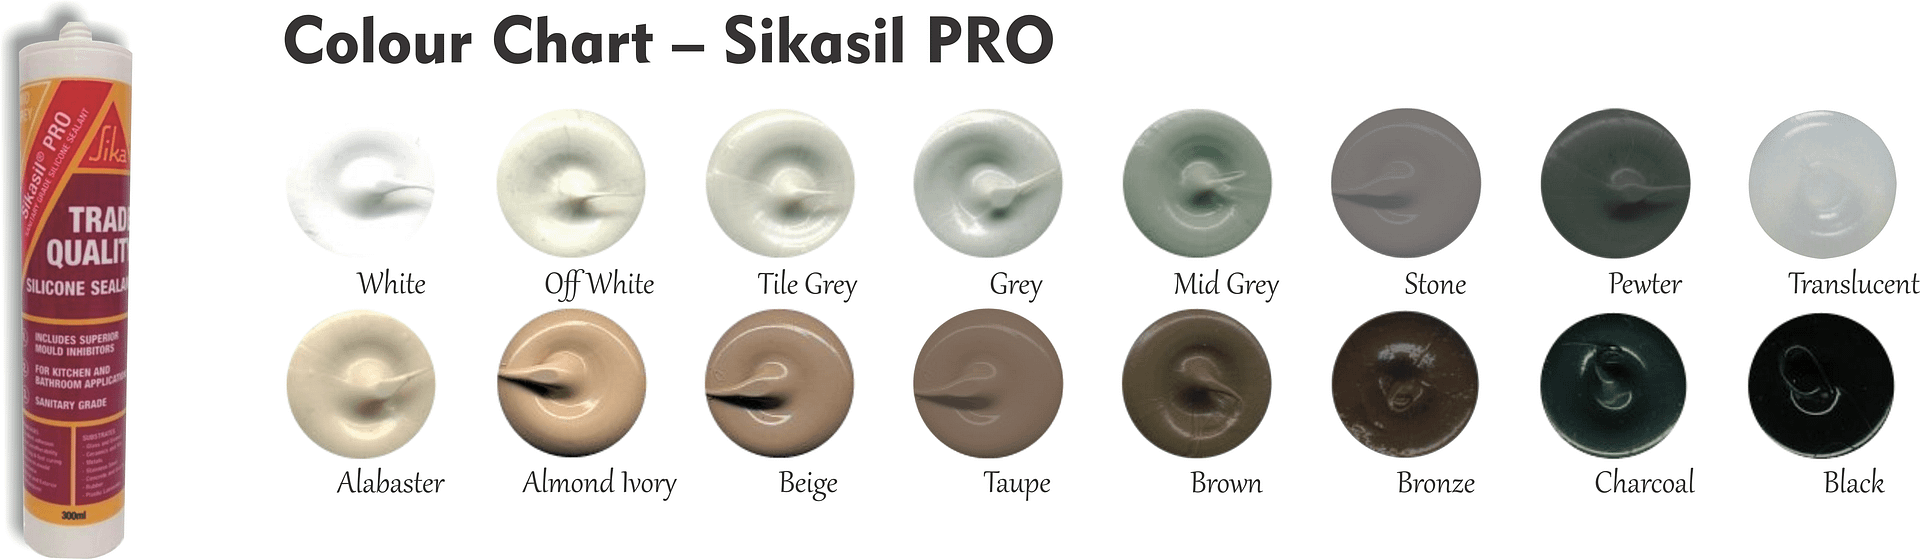 Colour Chart – Sikasil PRO 